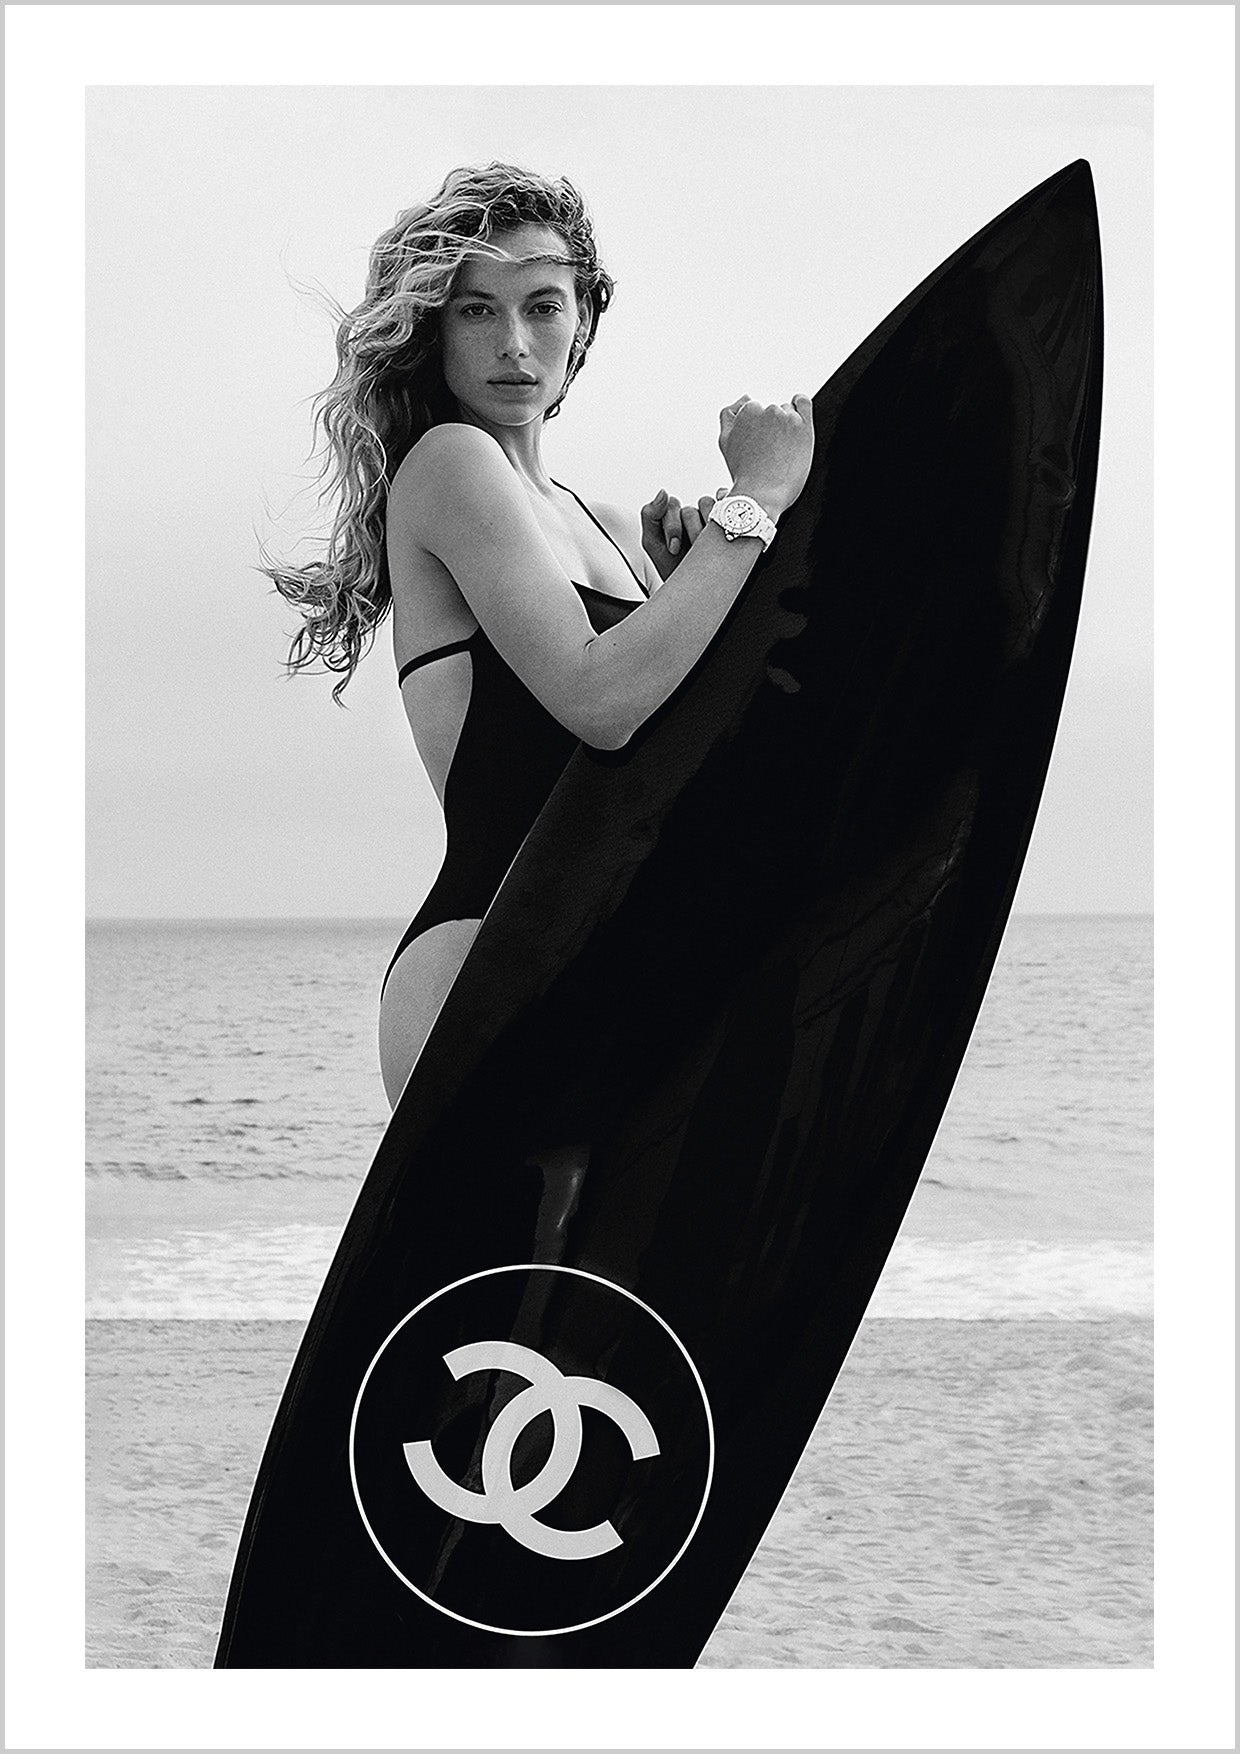 Chanel planches de surf affiche imprimable affiche de par Dantell